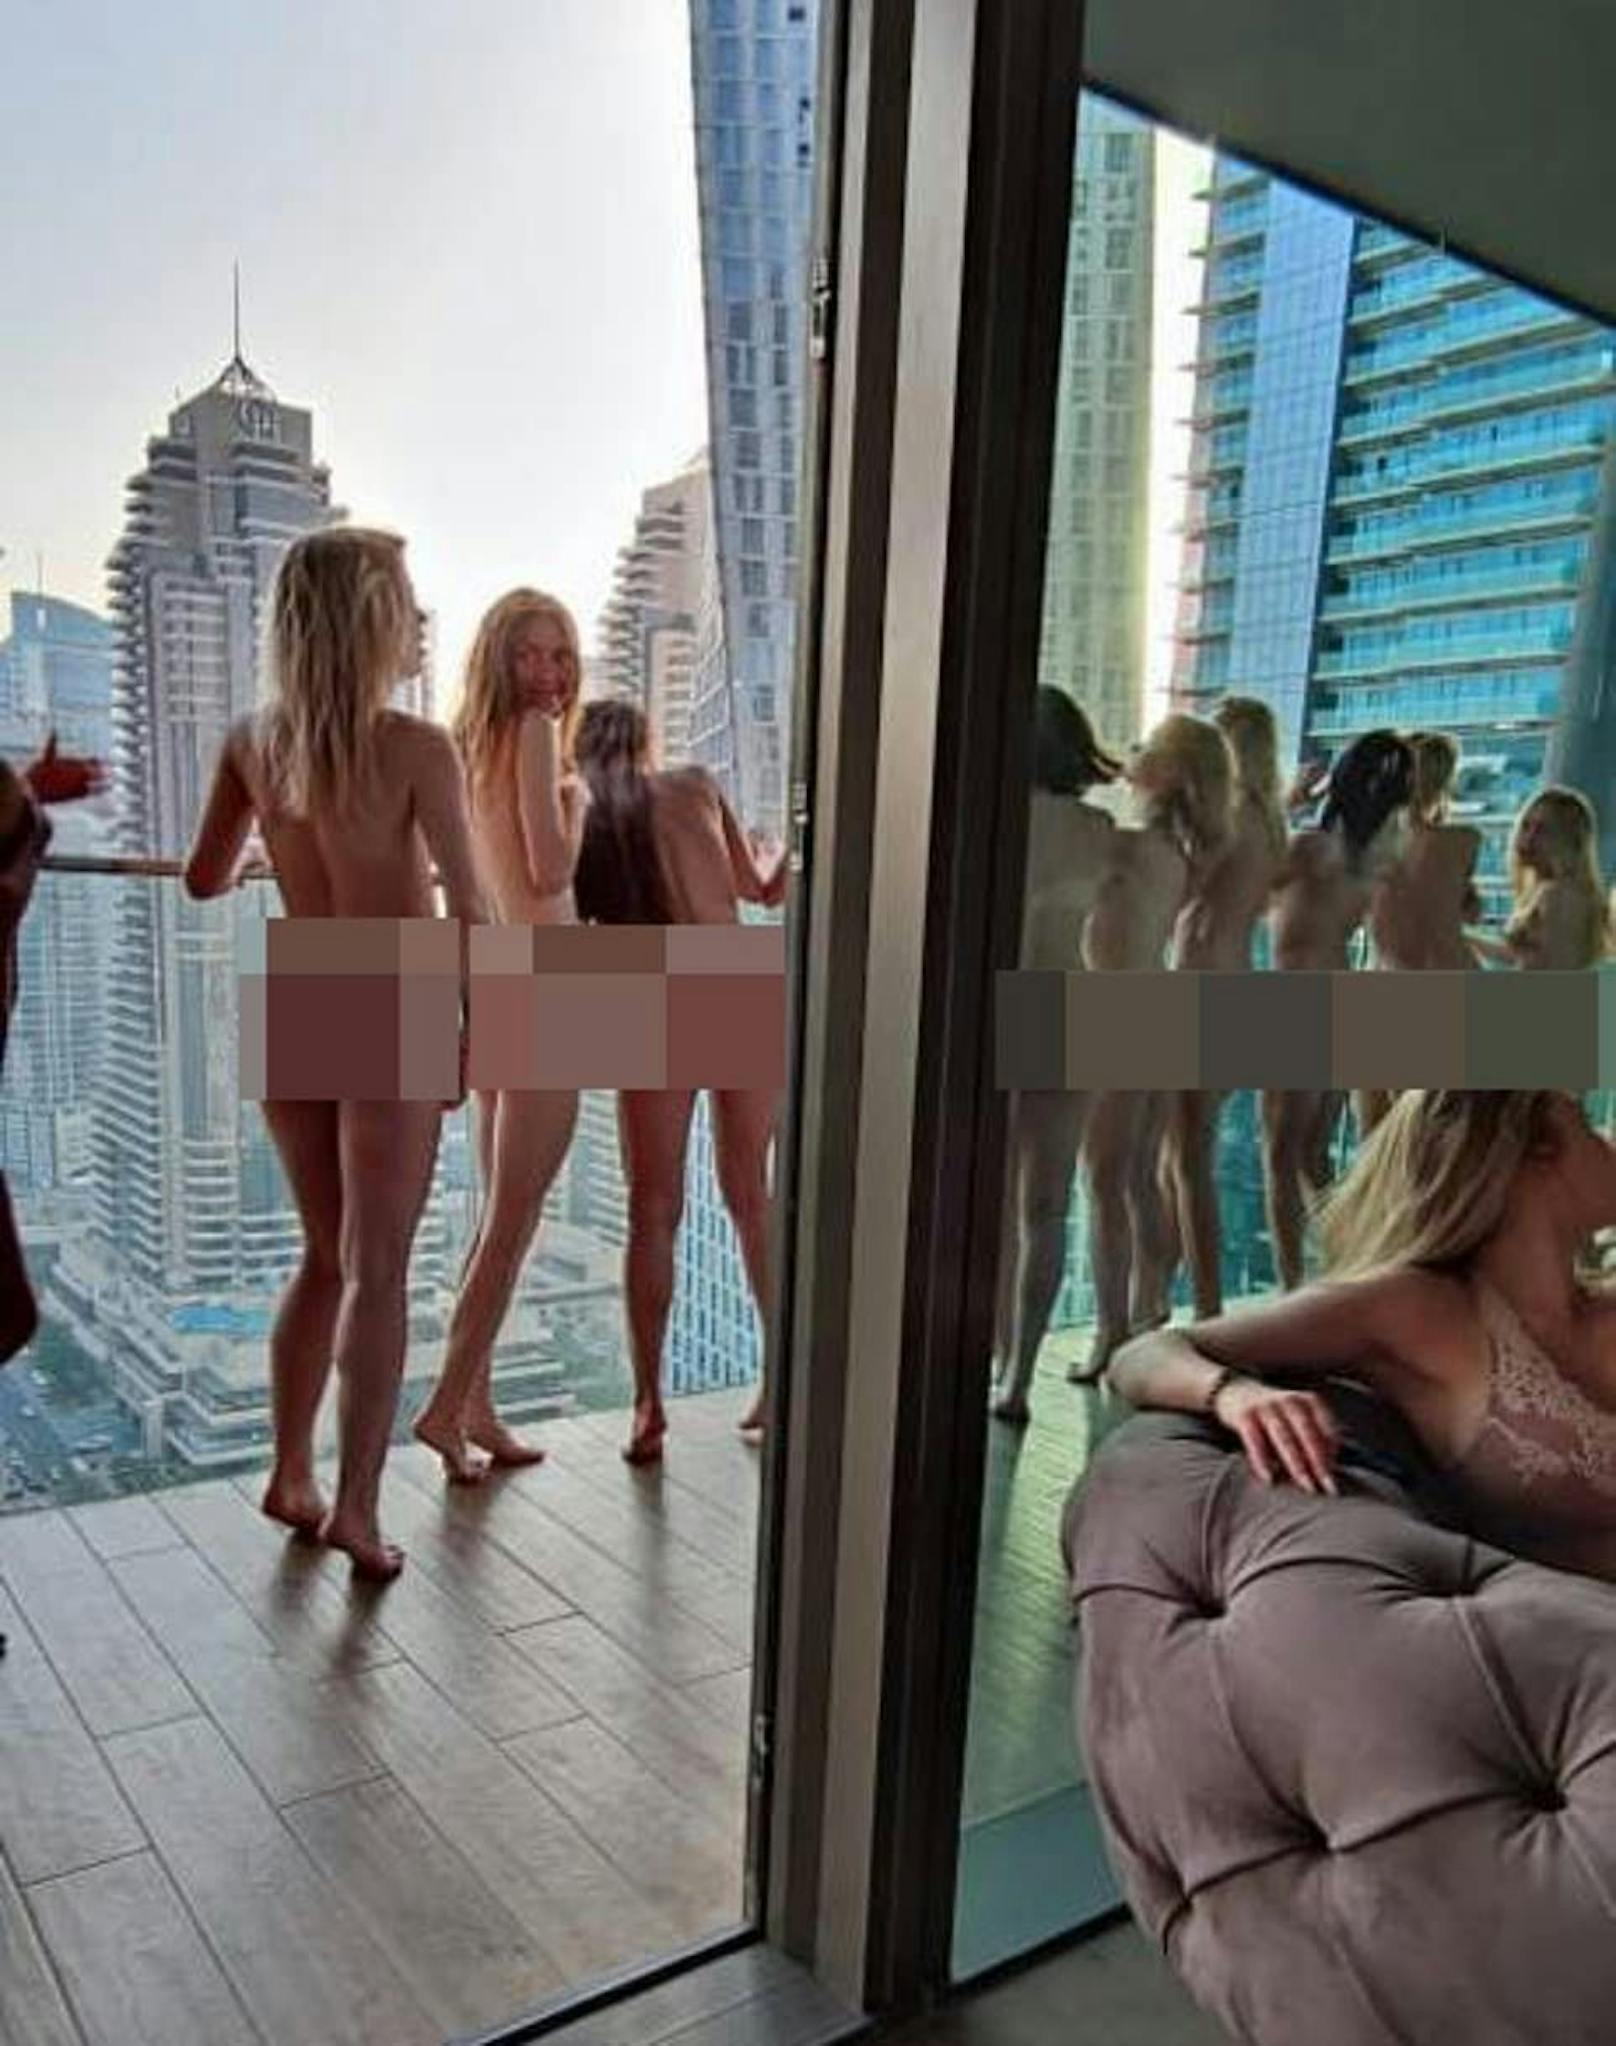 Nackt-Models in Dubai - so posierten sie auf einem Balkon eines Hochhauses.